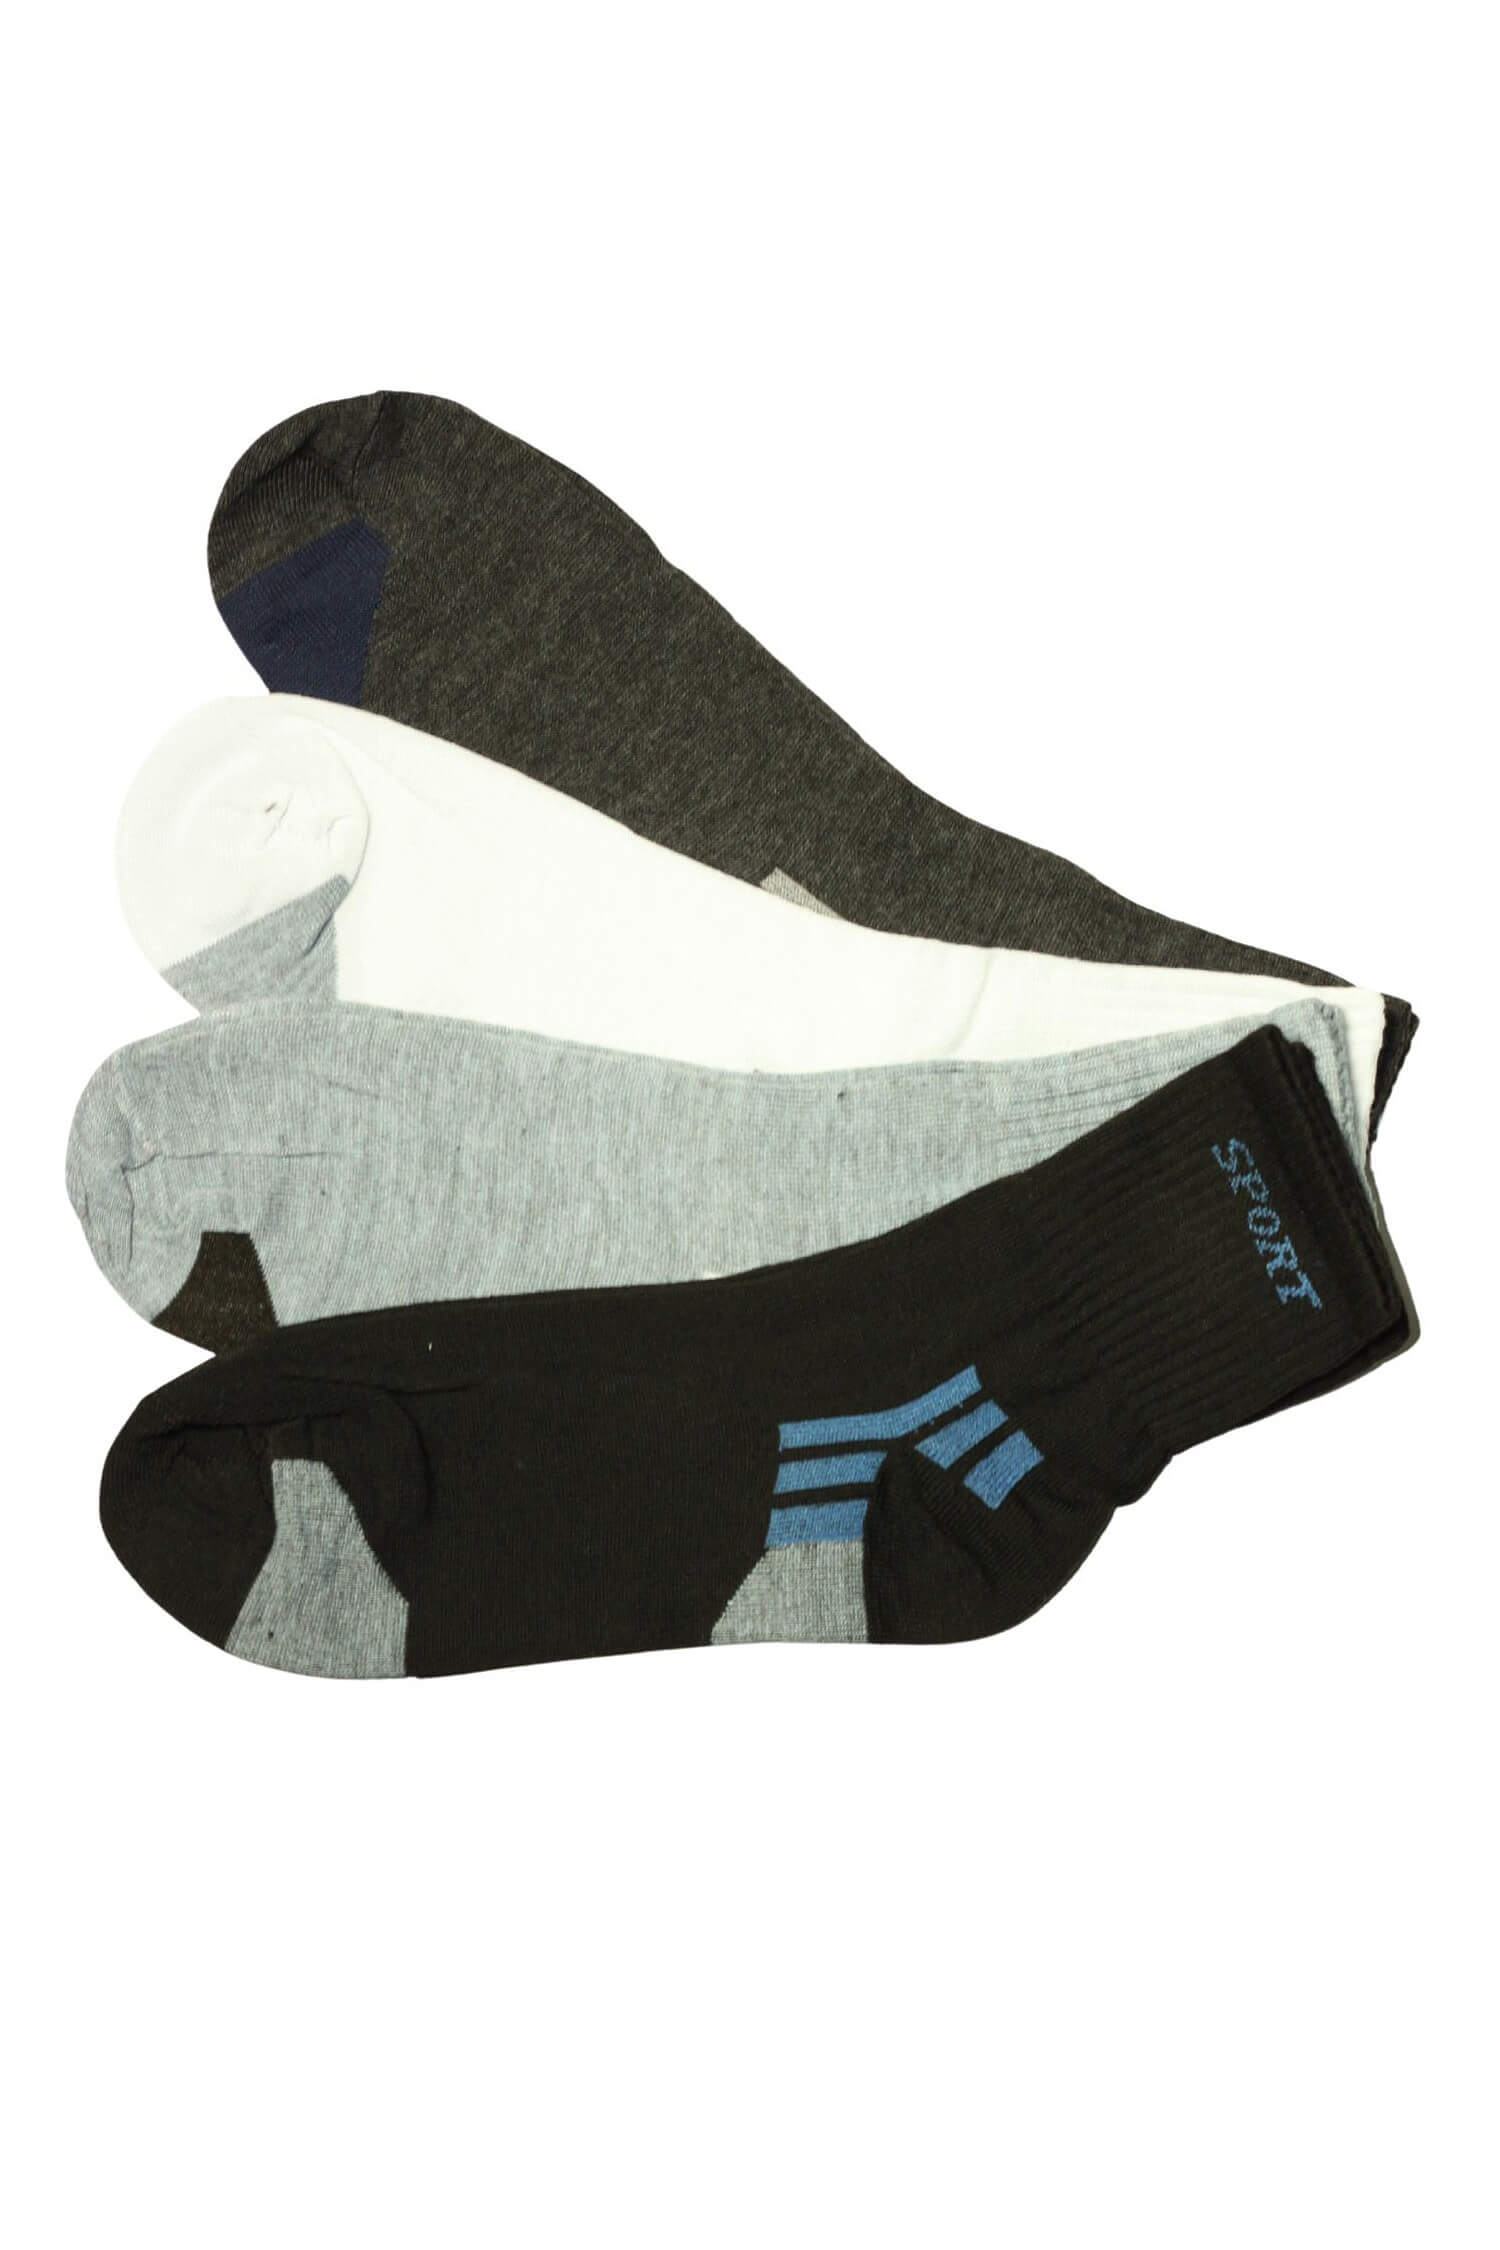 Pánské vysoké ponožky bavlna ZM-378 - 3 páry 40-43 vícebarevná